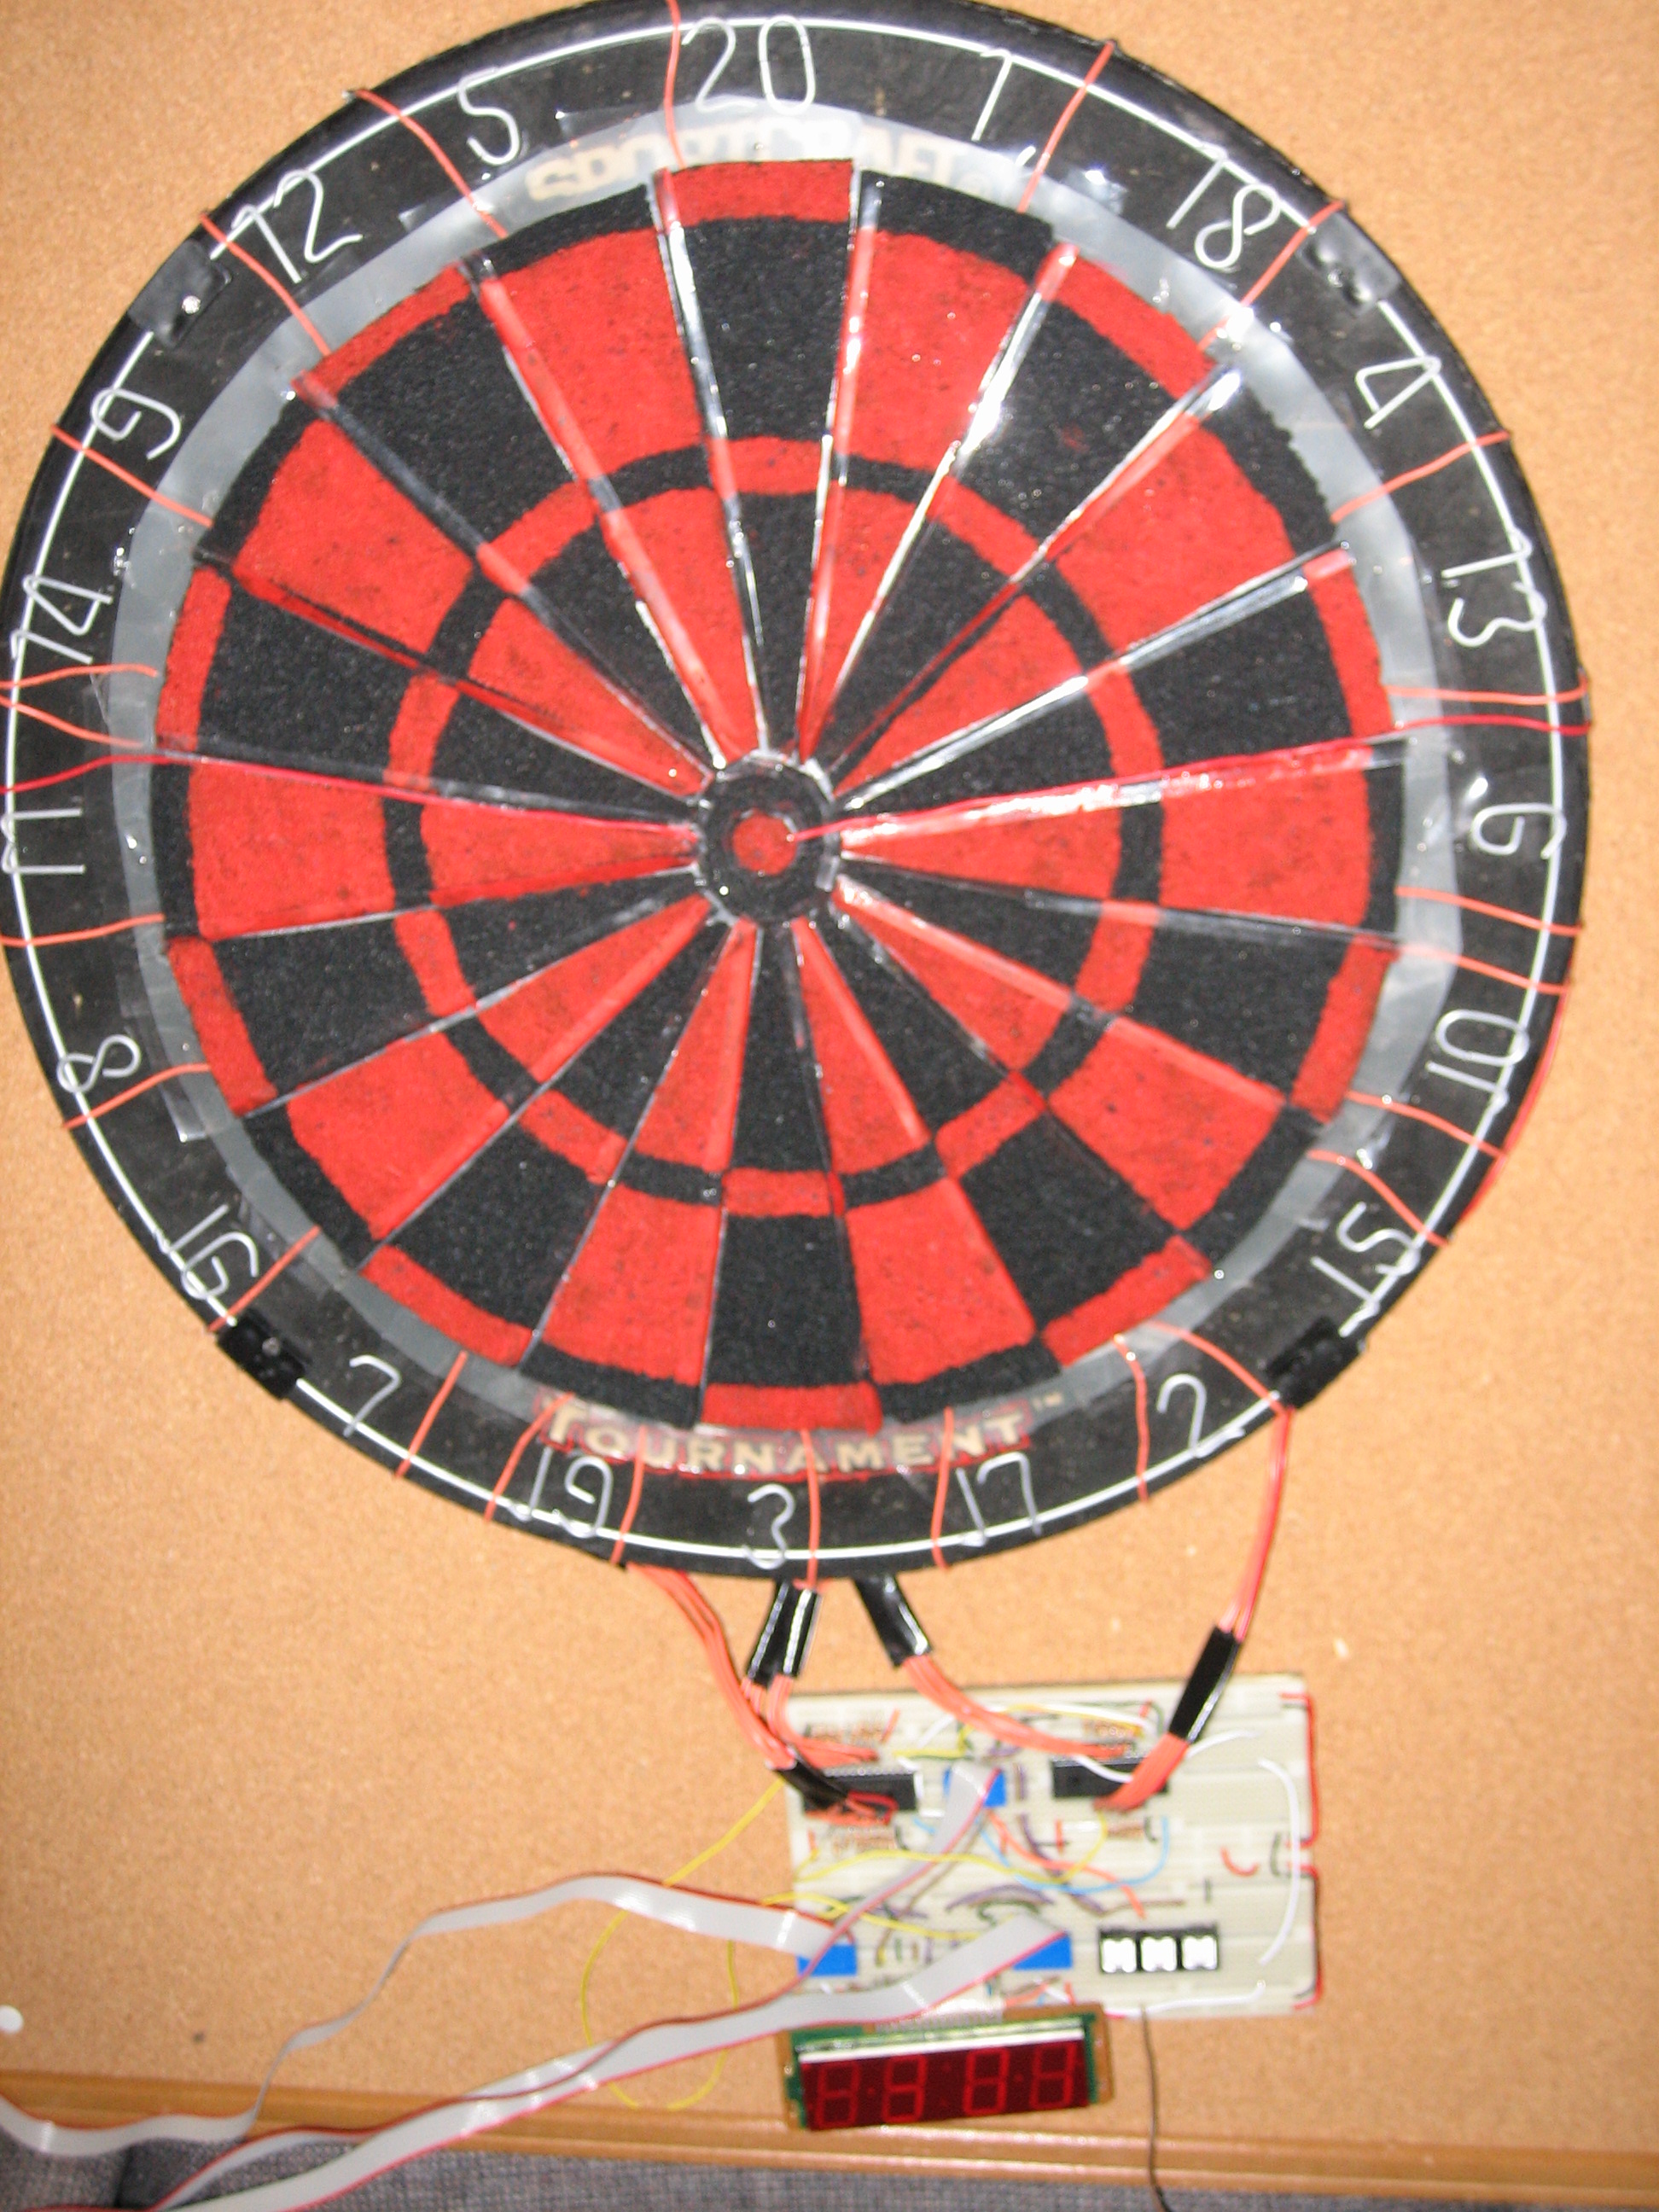 used electronic dart board